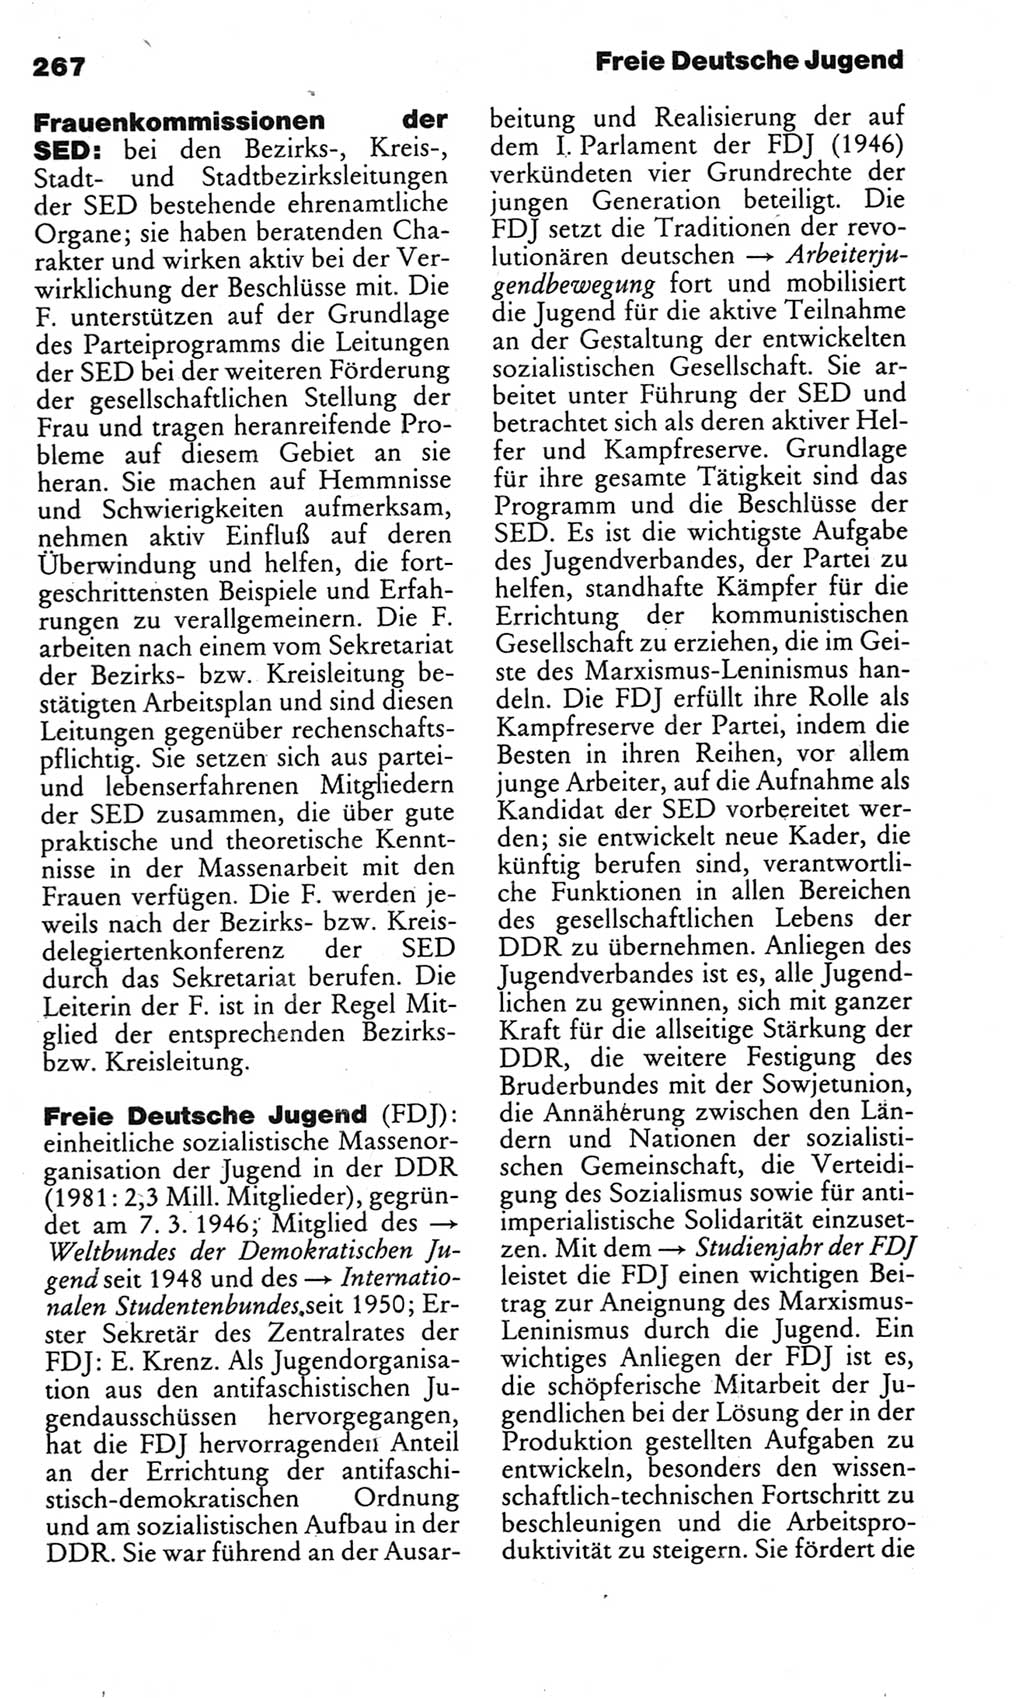 Kleines politisches Wörterbuch [Deutsche Demokratische Republik (DDR)] 1983, Seite 267 (Kl. pol. Wb. DDR 1983, S. 267)